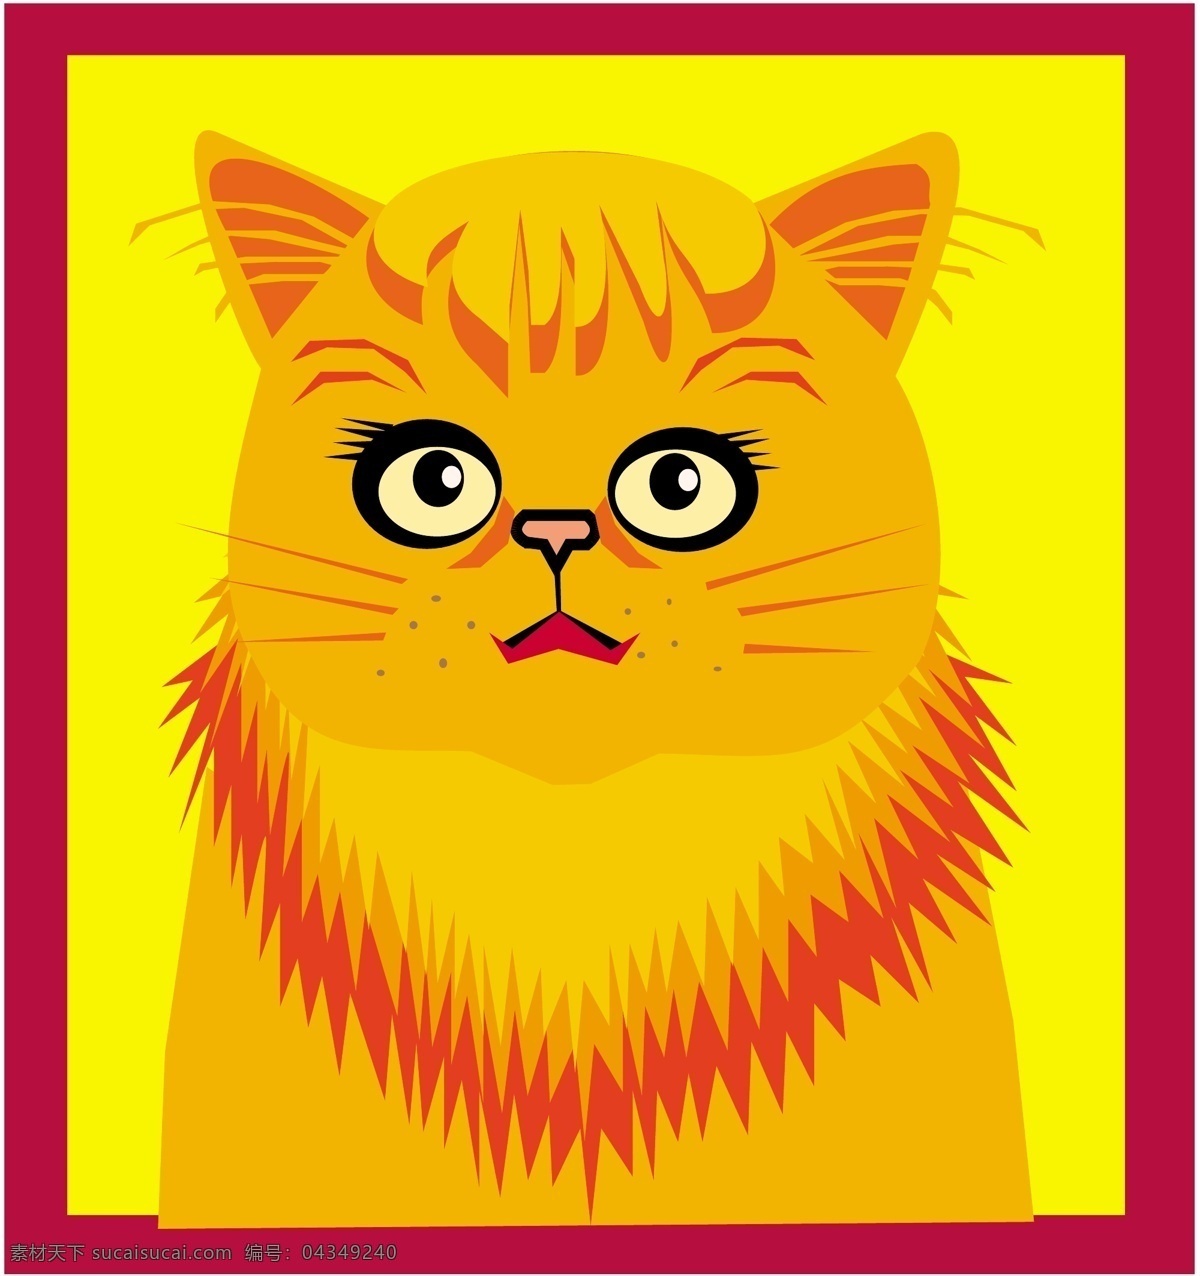 宠物猫 矢量素材 格式 eps格式 设计素材 宠物世界 矢量动物 矢量图库 黄色